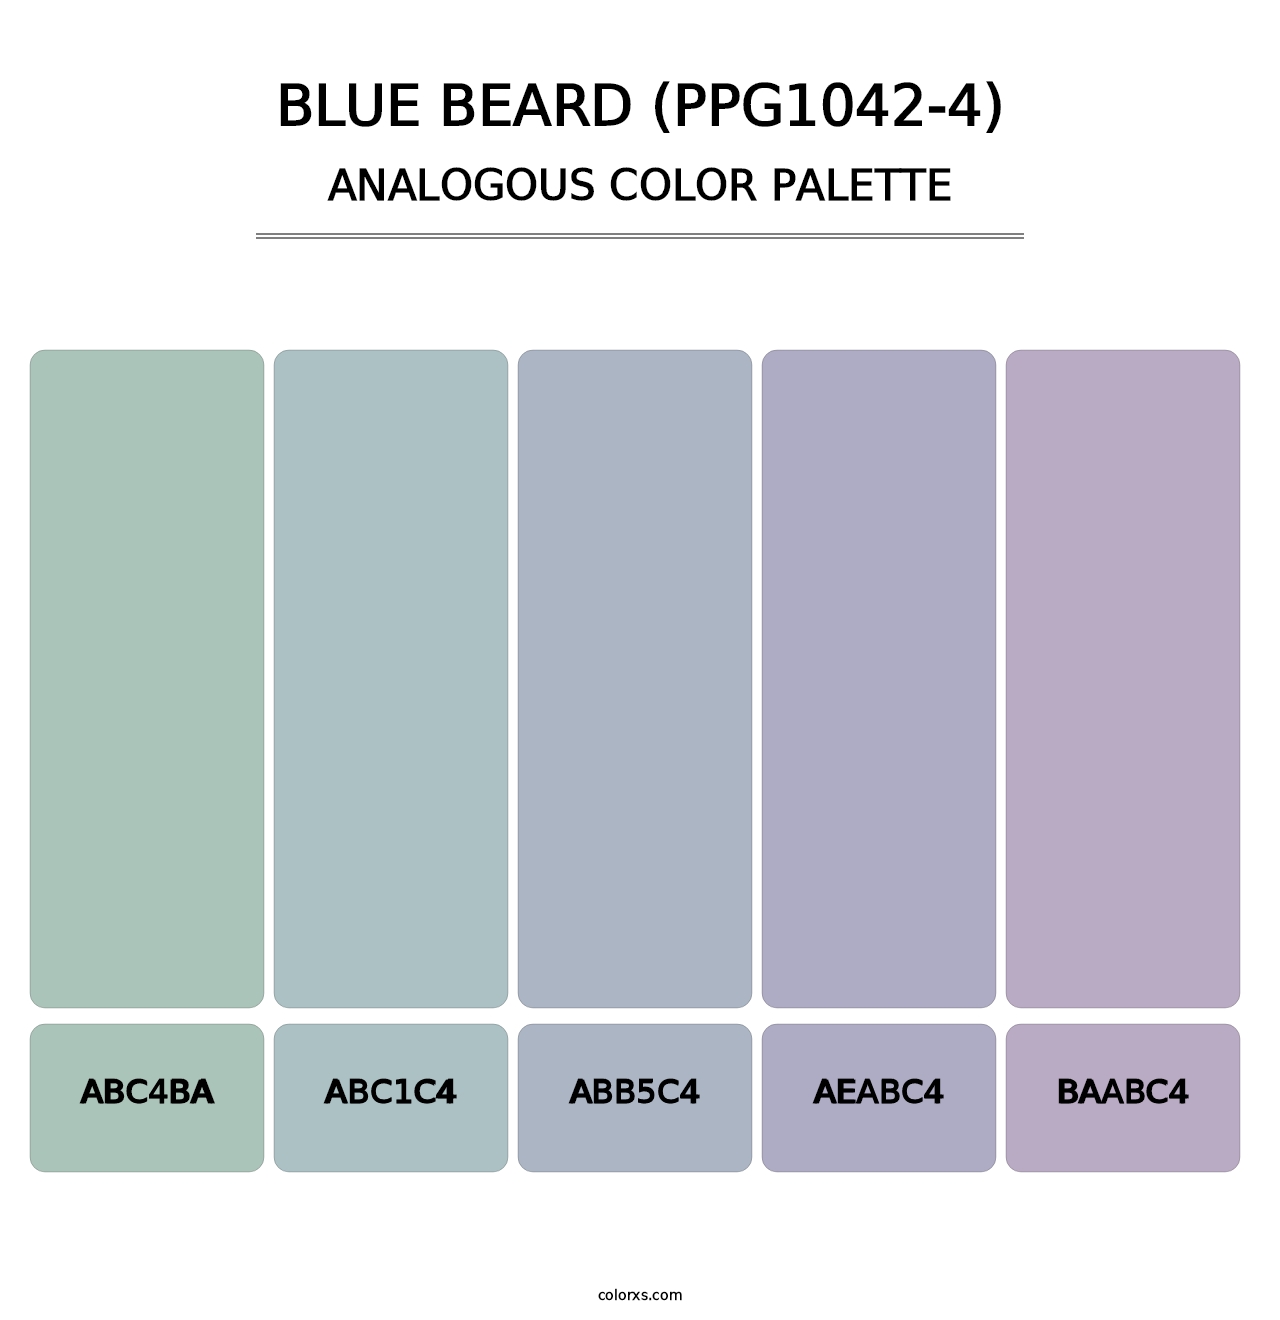 Blue Beard (PPG1042-4) - Analogous Color Palette